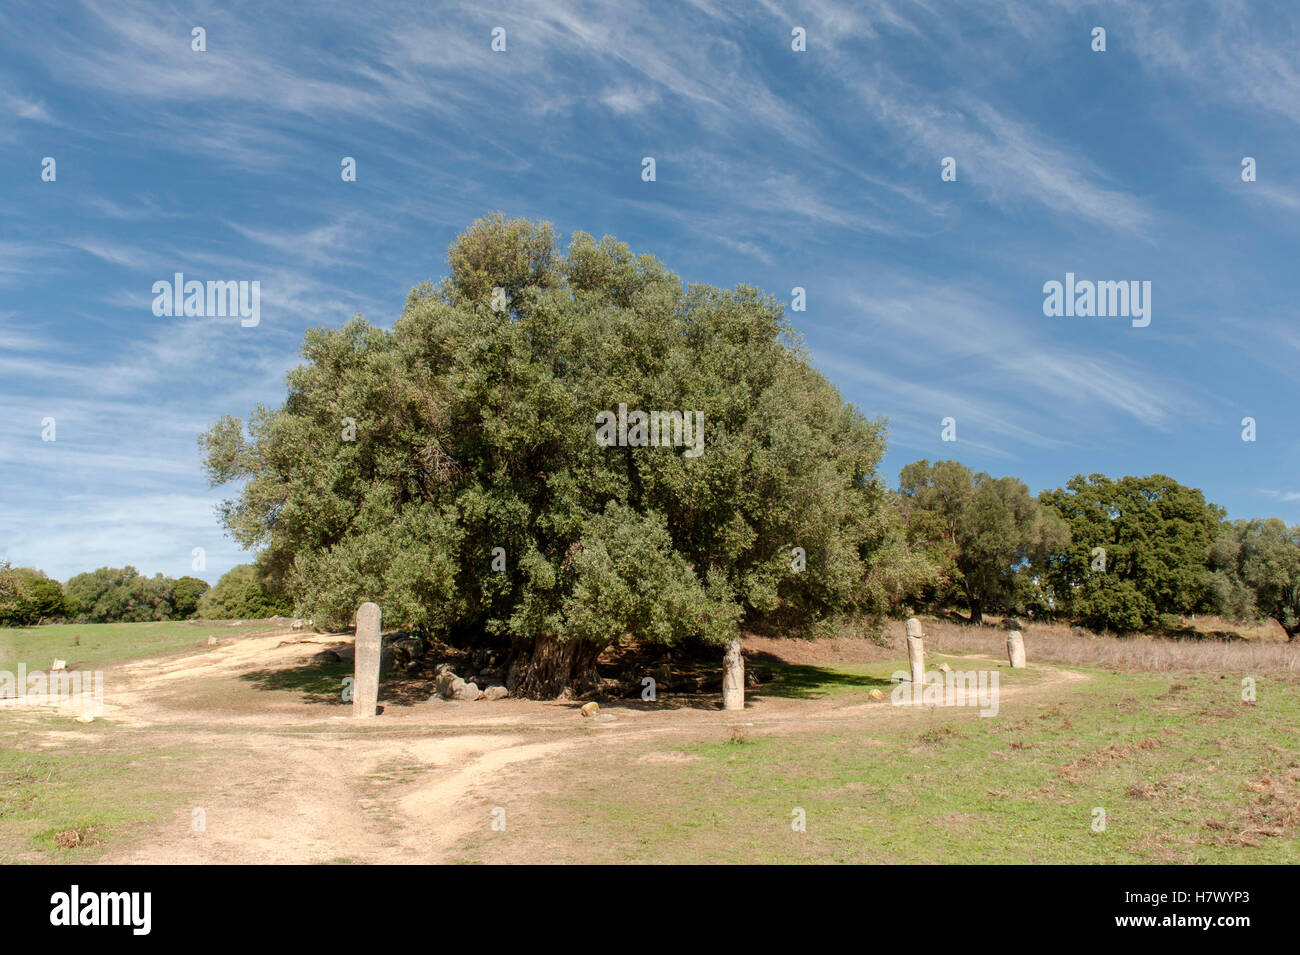 Olivenbaum mit Ring von Menhiren in Filitosa, die prähistorische Hauptstadt Korsikas, mit Dolmen, Menhire und Torrean Relikte Stockfoto